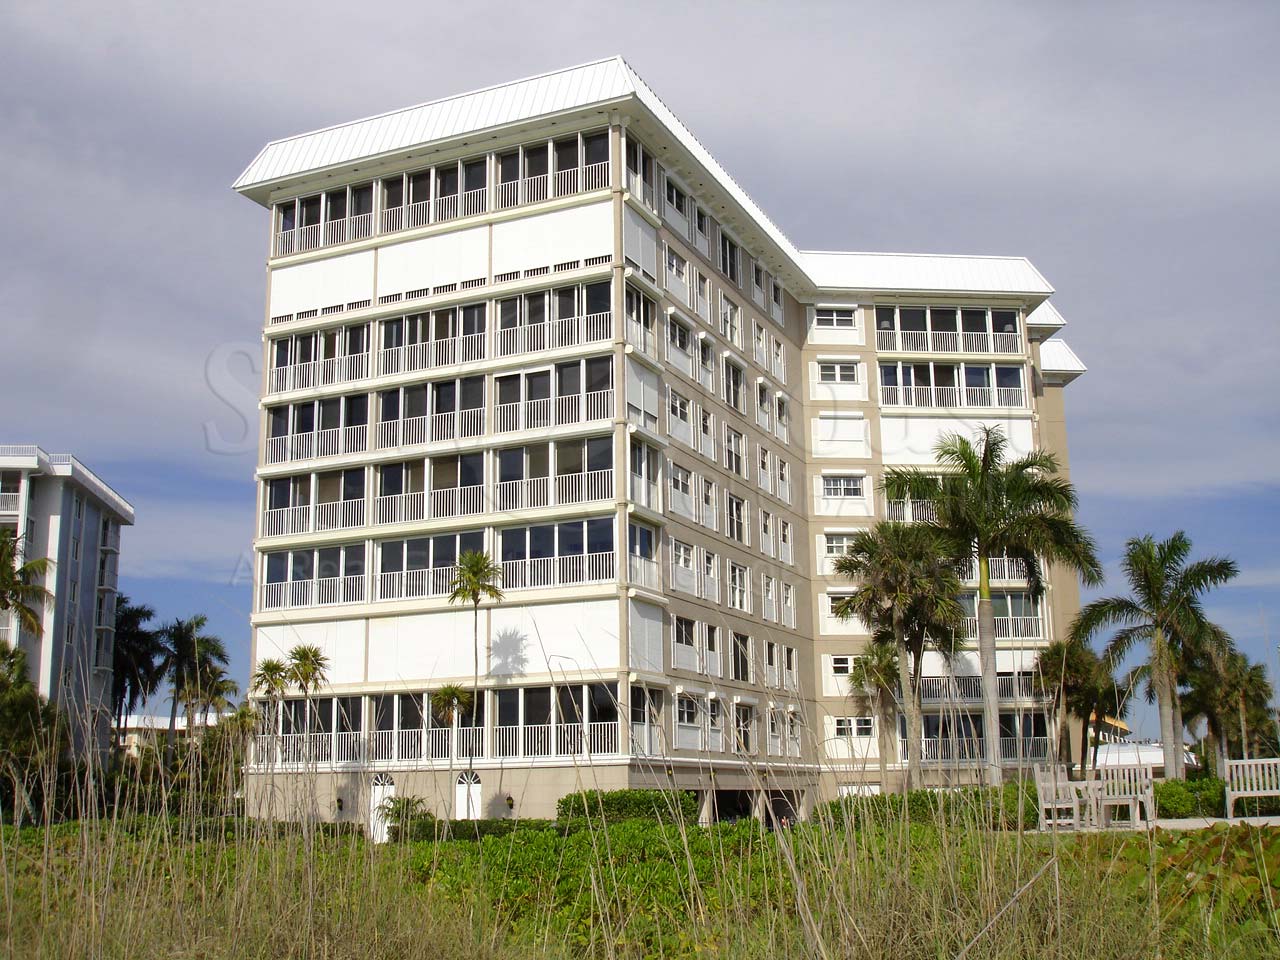 Westgate Condominium Building